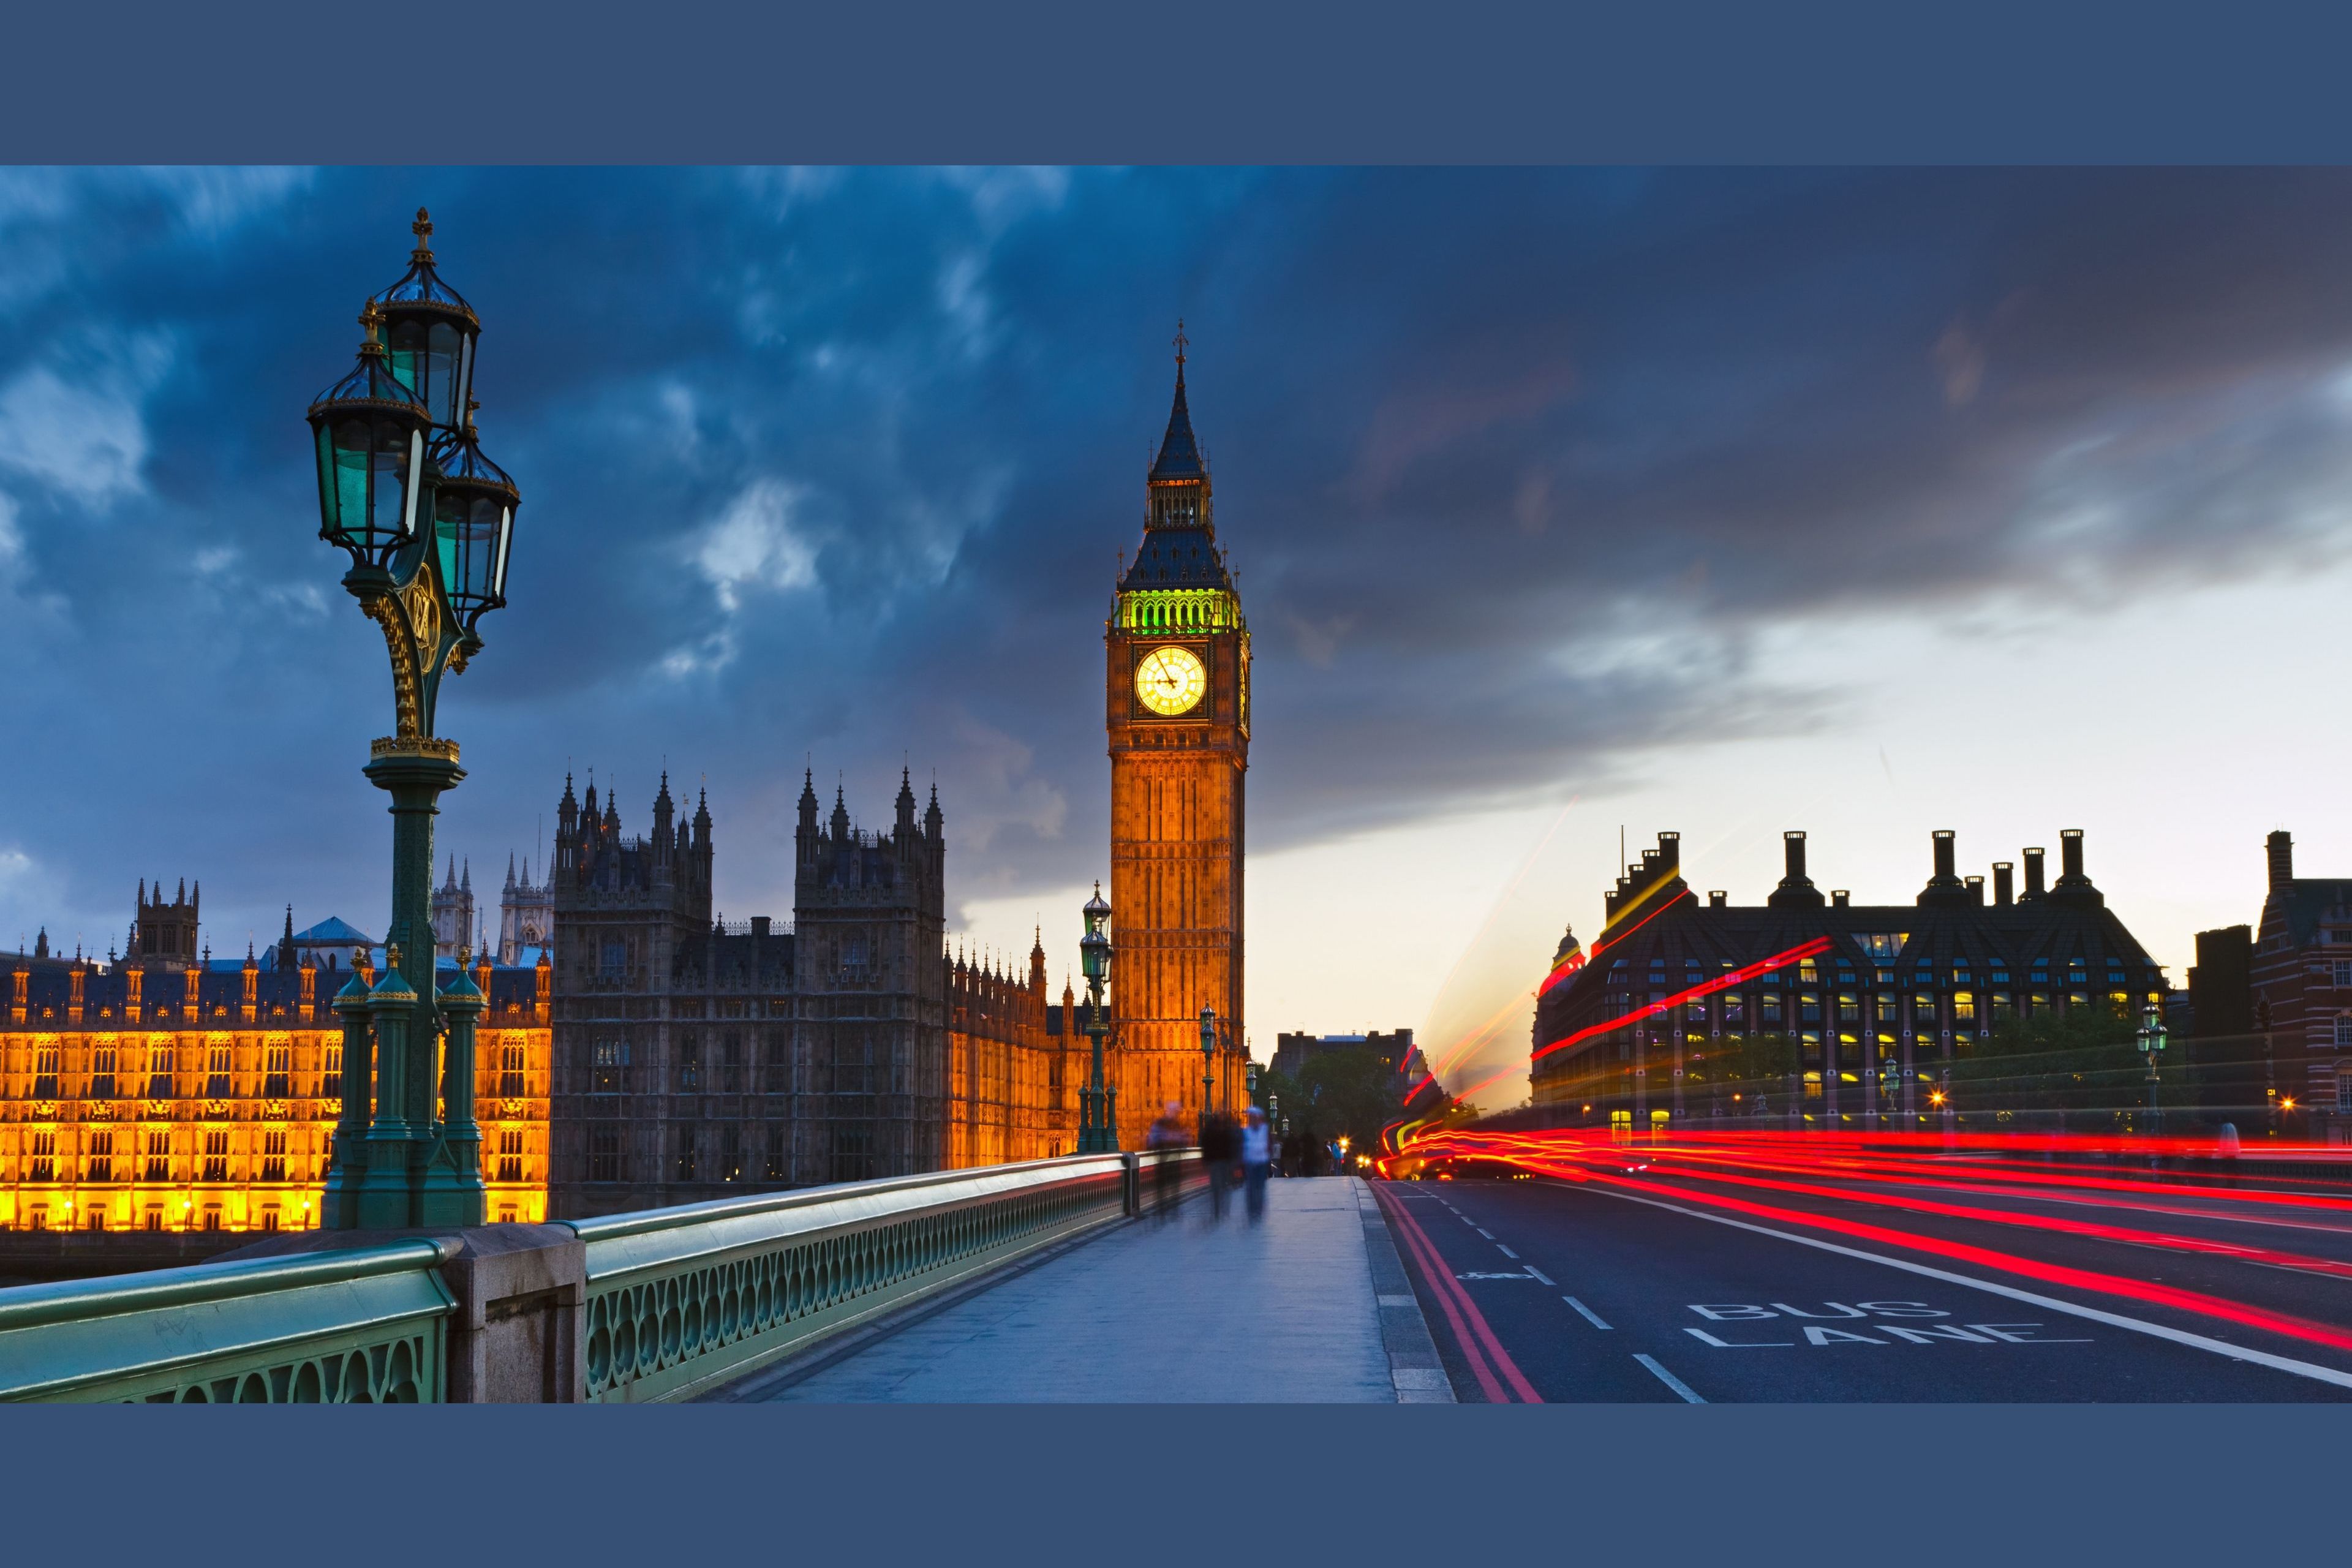 Путешествие по лондону. Биг Бен (Великобритания). Лондон + Великобритания. БИГБЕН Лондон столица Англии. Достопримечательности Англии Биг Бен.